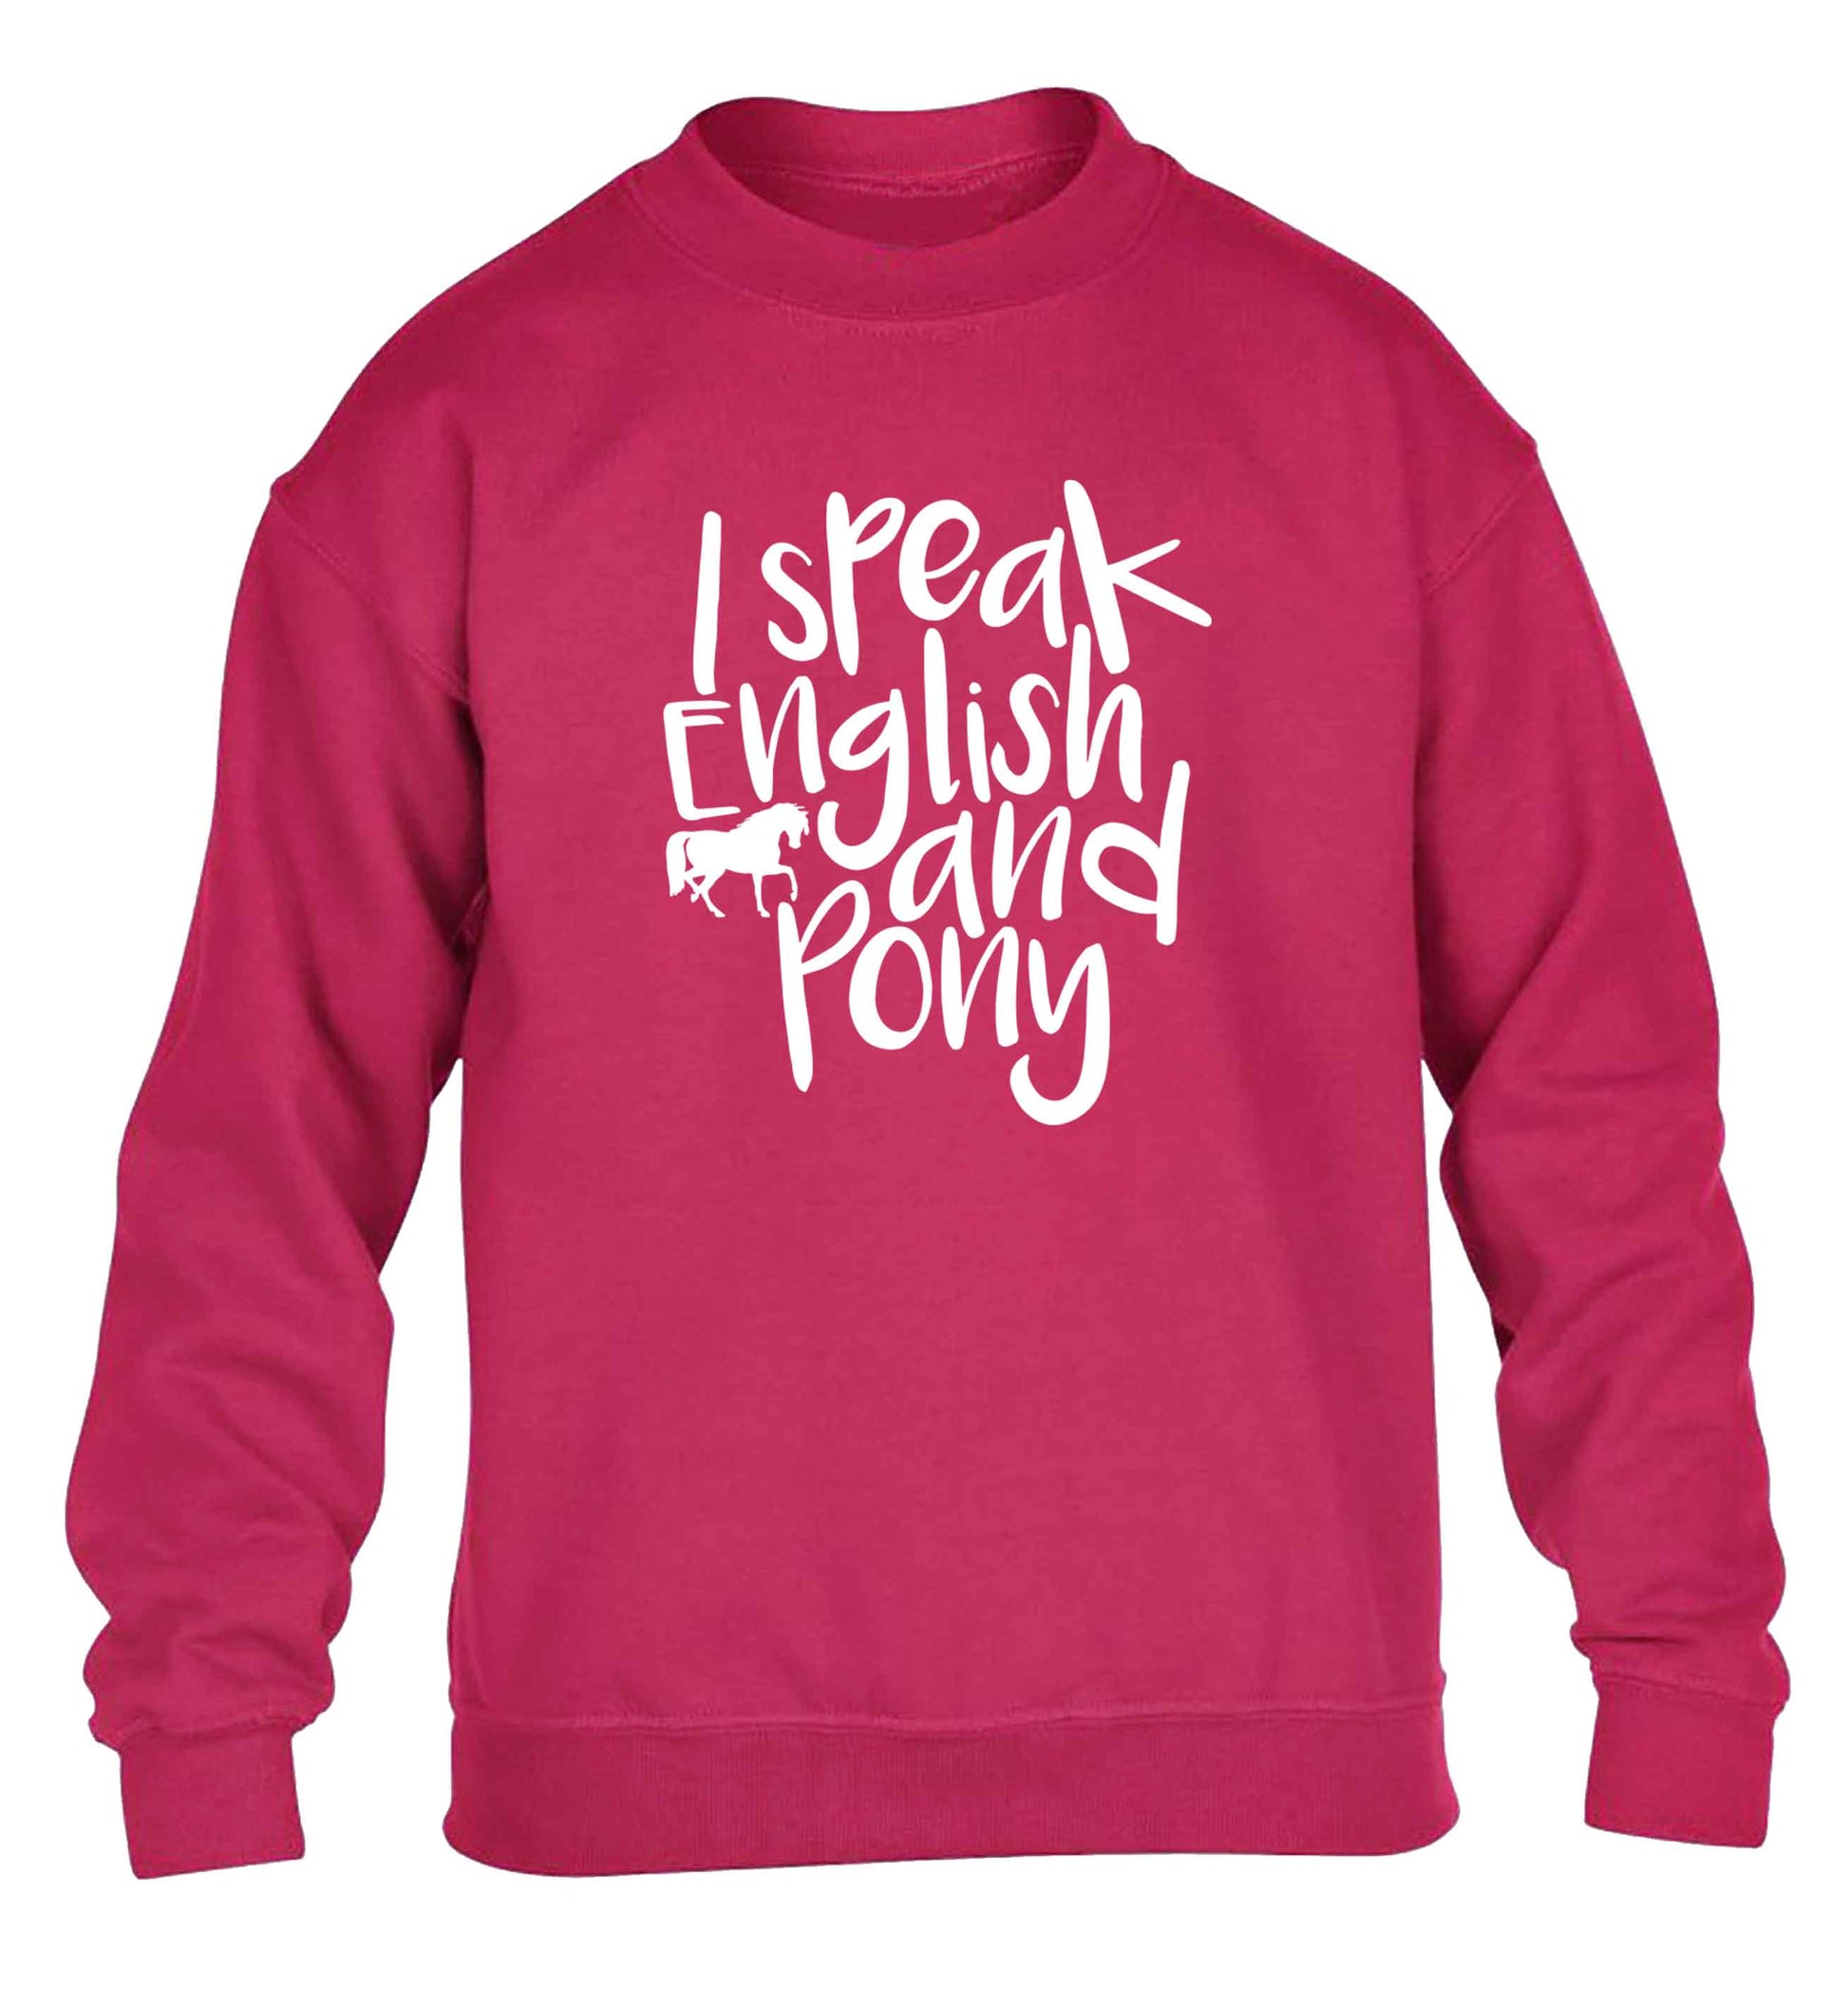 I speak English and pony children's pink sweater 12-13 Years